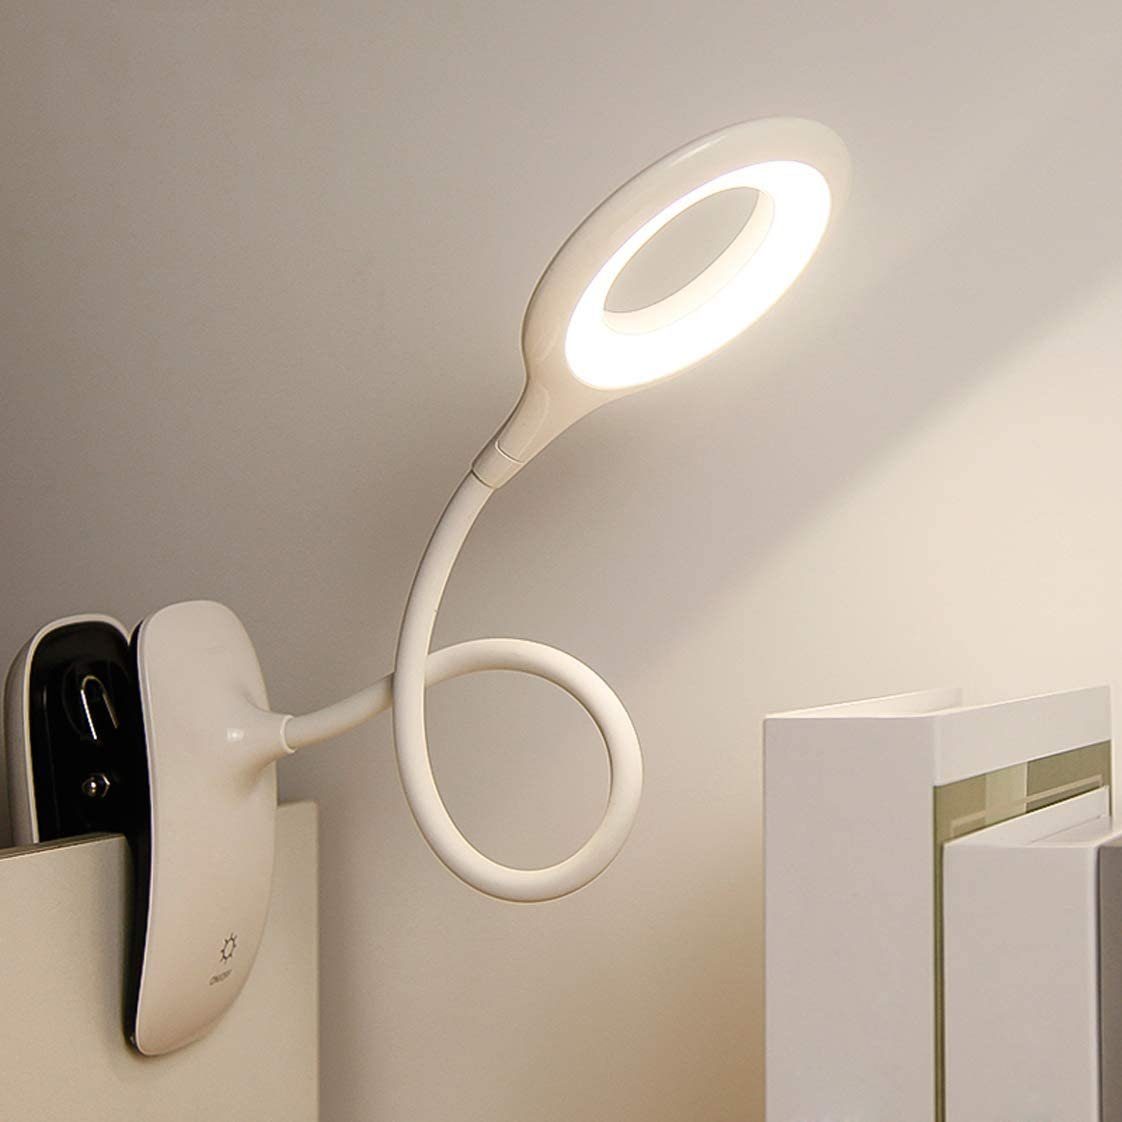 Buchlampe Klemme, mit 3 GelldG -kaltweiß, Leselampe 16 Leselampe Helligkeiten, warmweiß LED LED LEDs, Deckenlampe